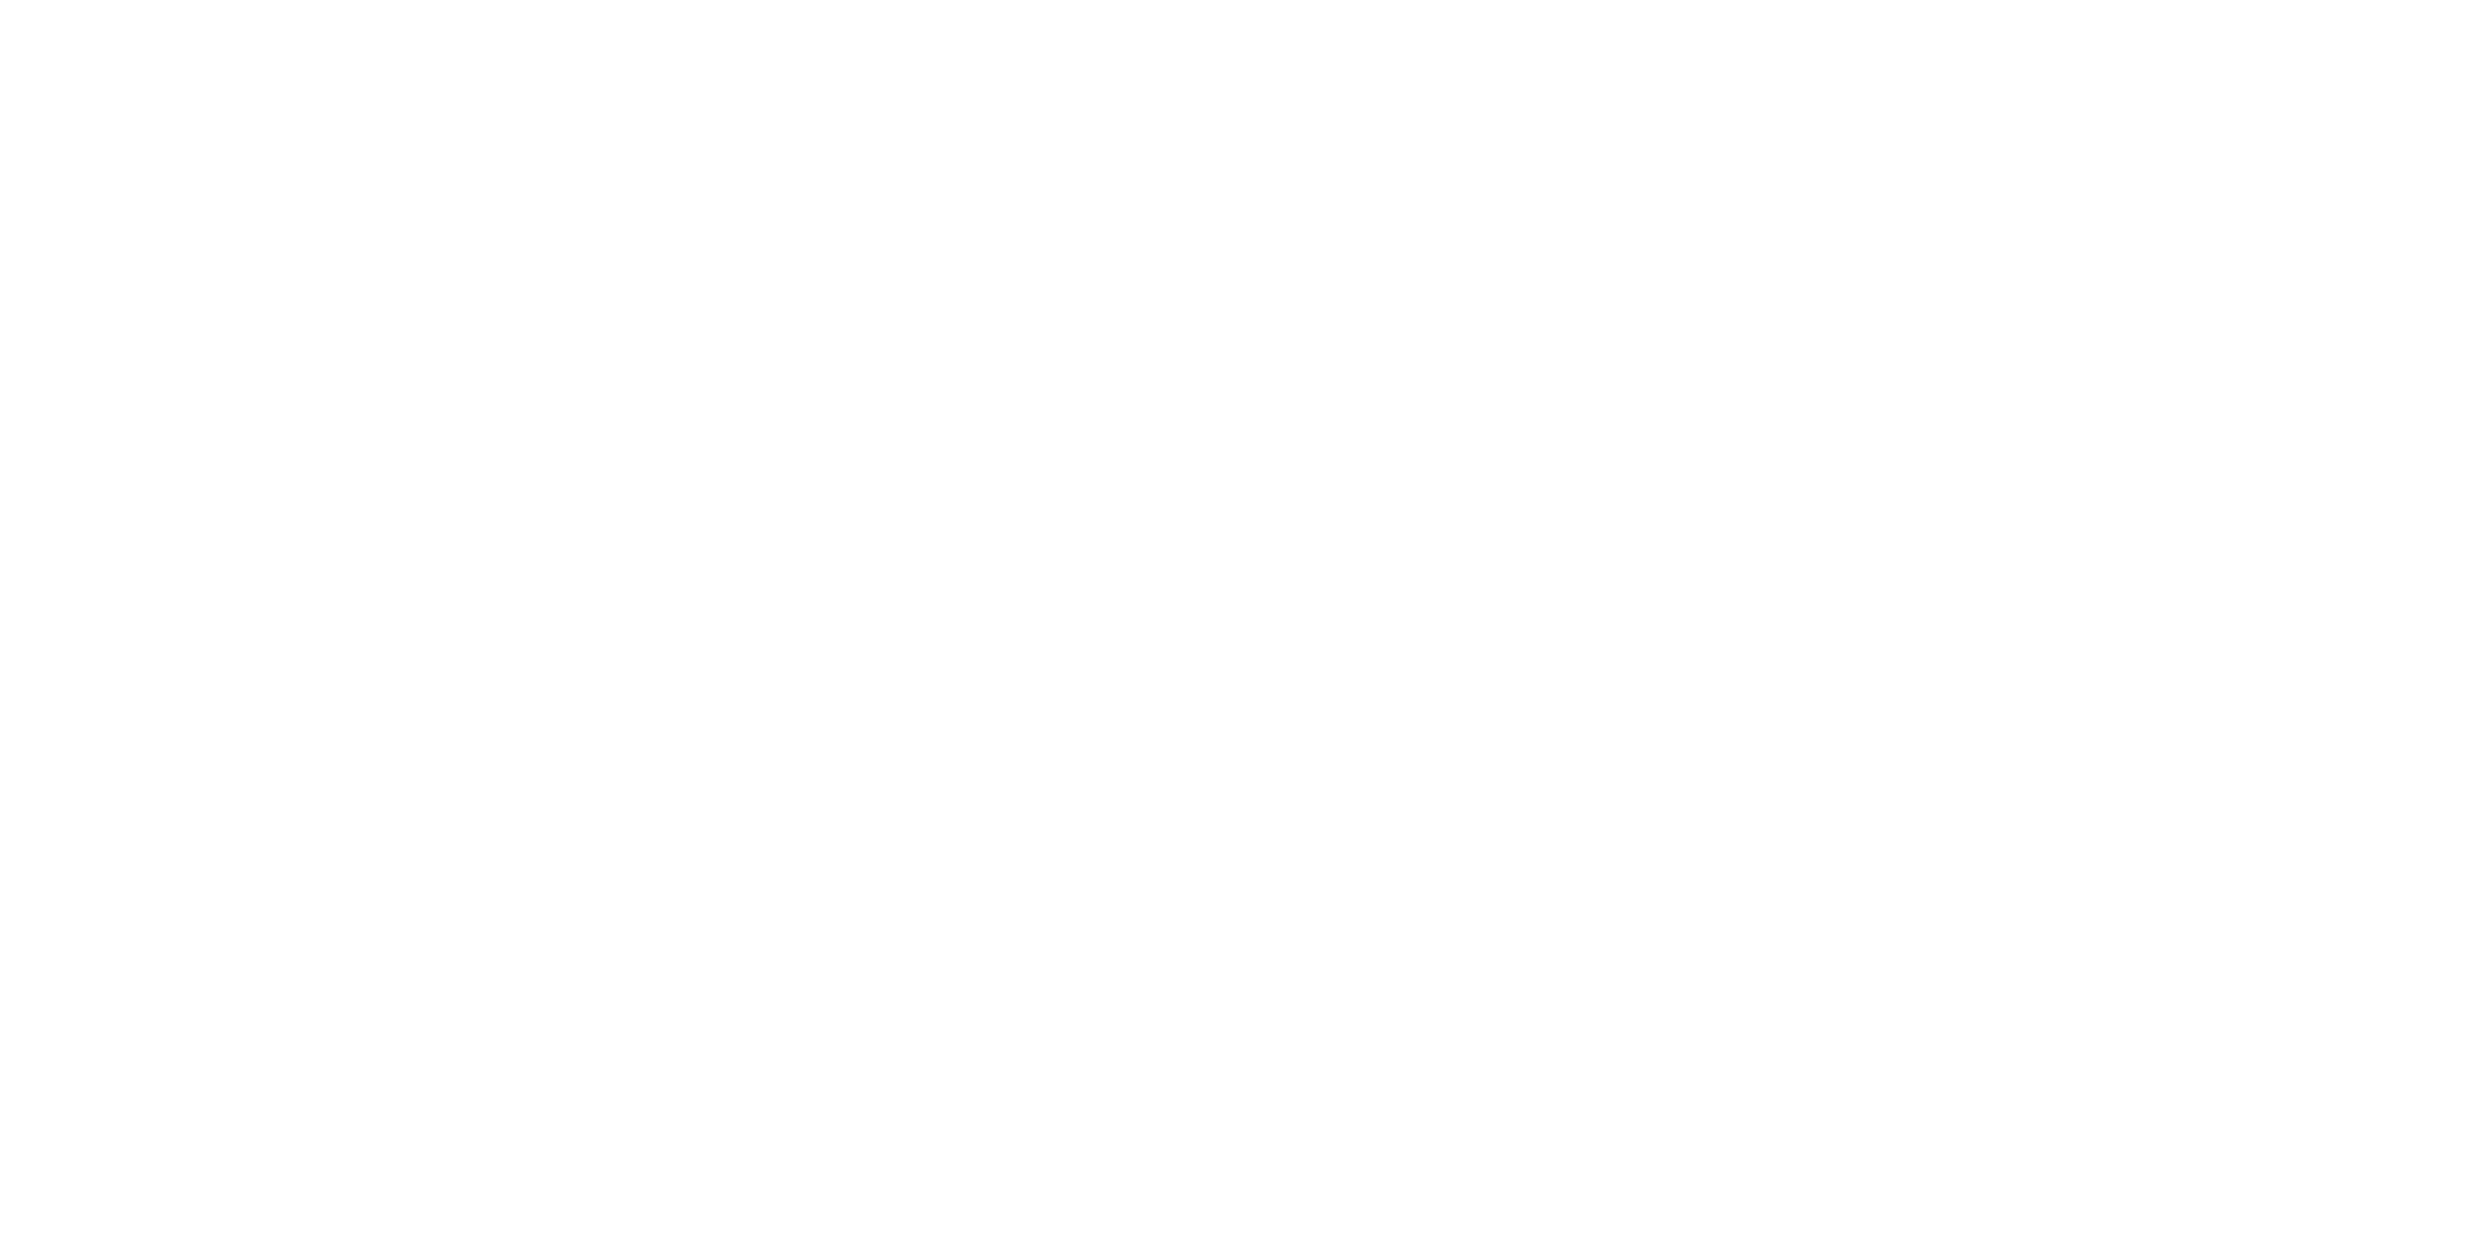 Celtic Stencil by Co Spinhoven on Granite Bay Graphic Design